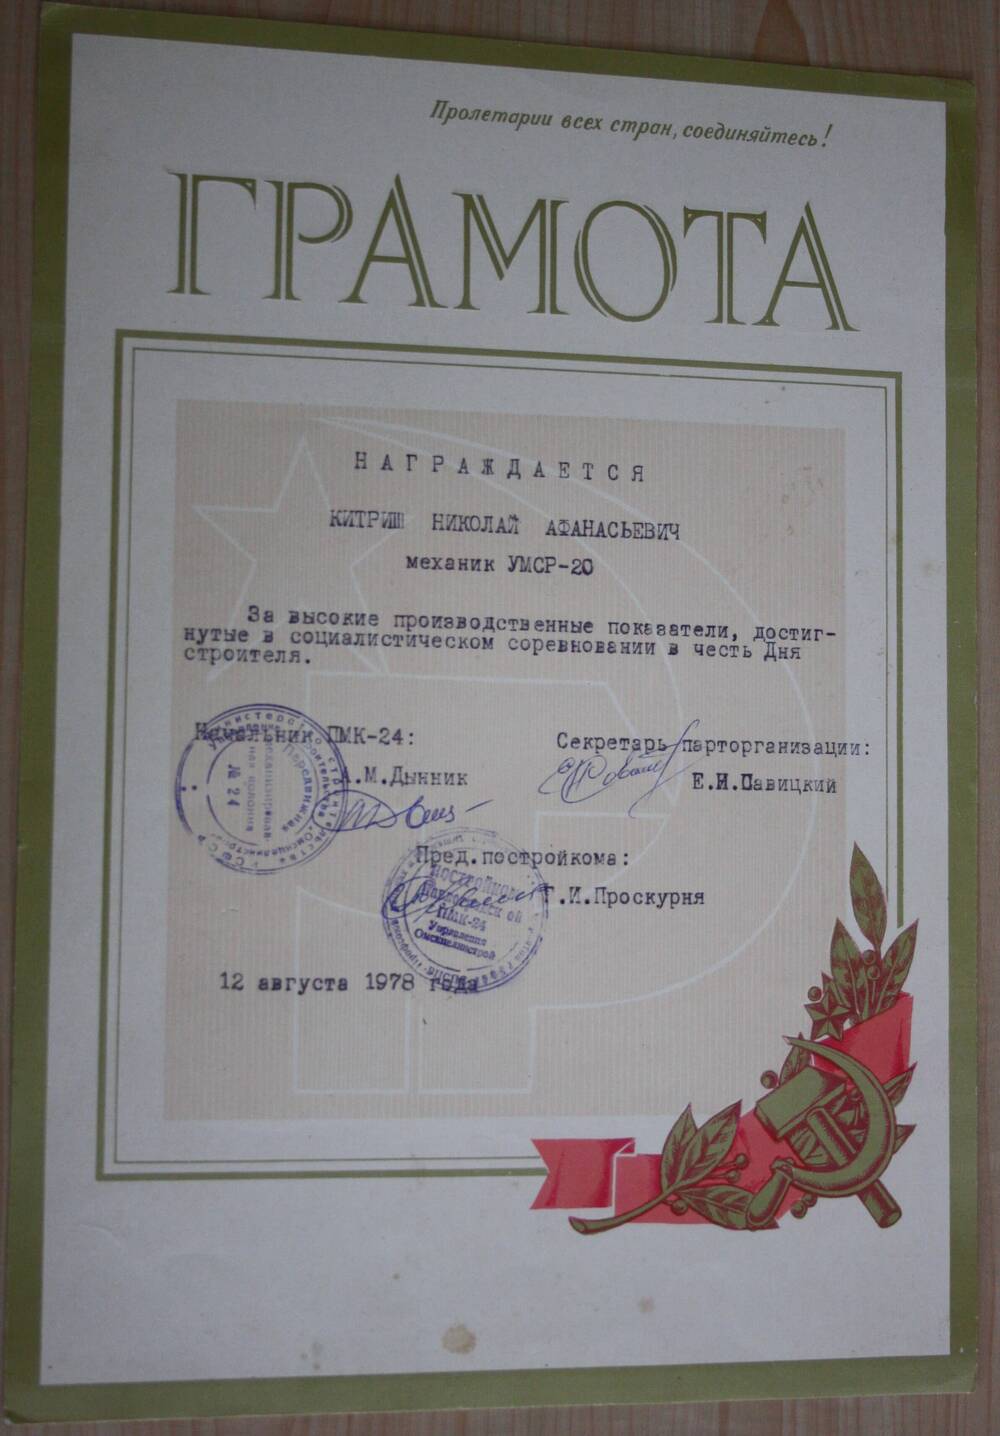 Грамота Китришу Н.А. механику УМСР - 20 за высокие производственные показатели, достигнутые в социалистическом соревновании в честь  Дня строителя. 12 августа 1978 г.